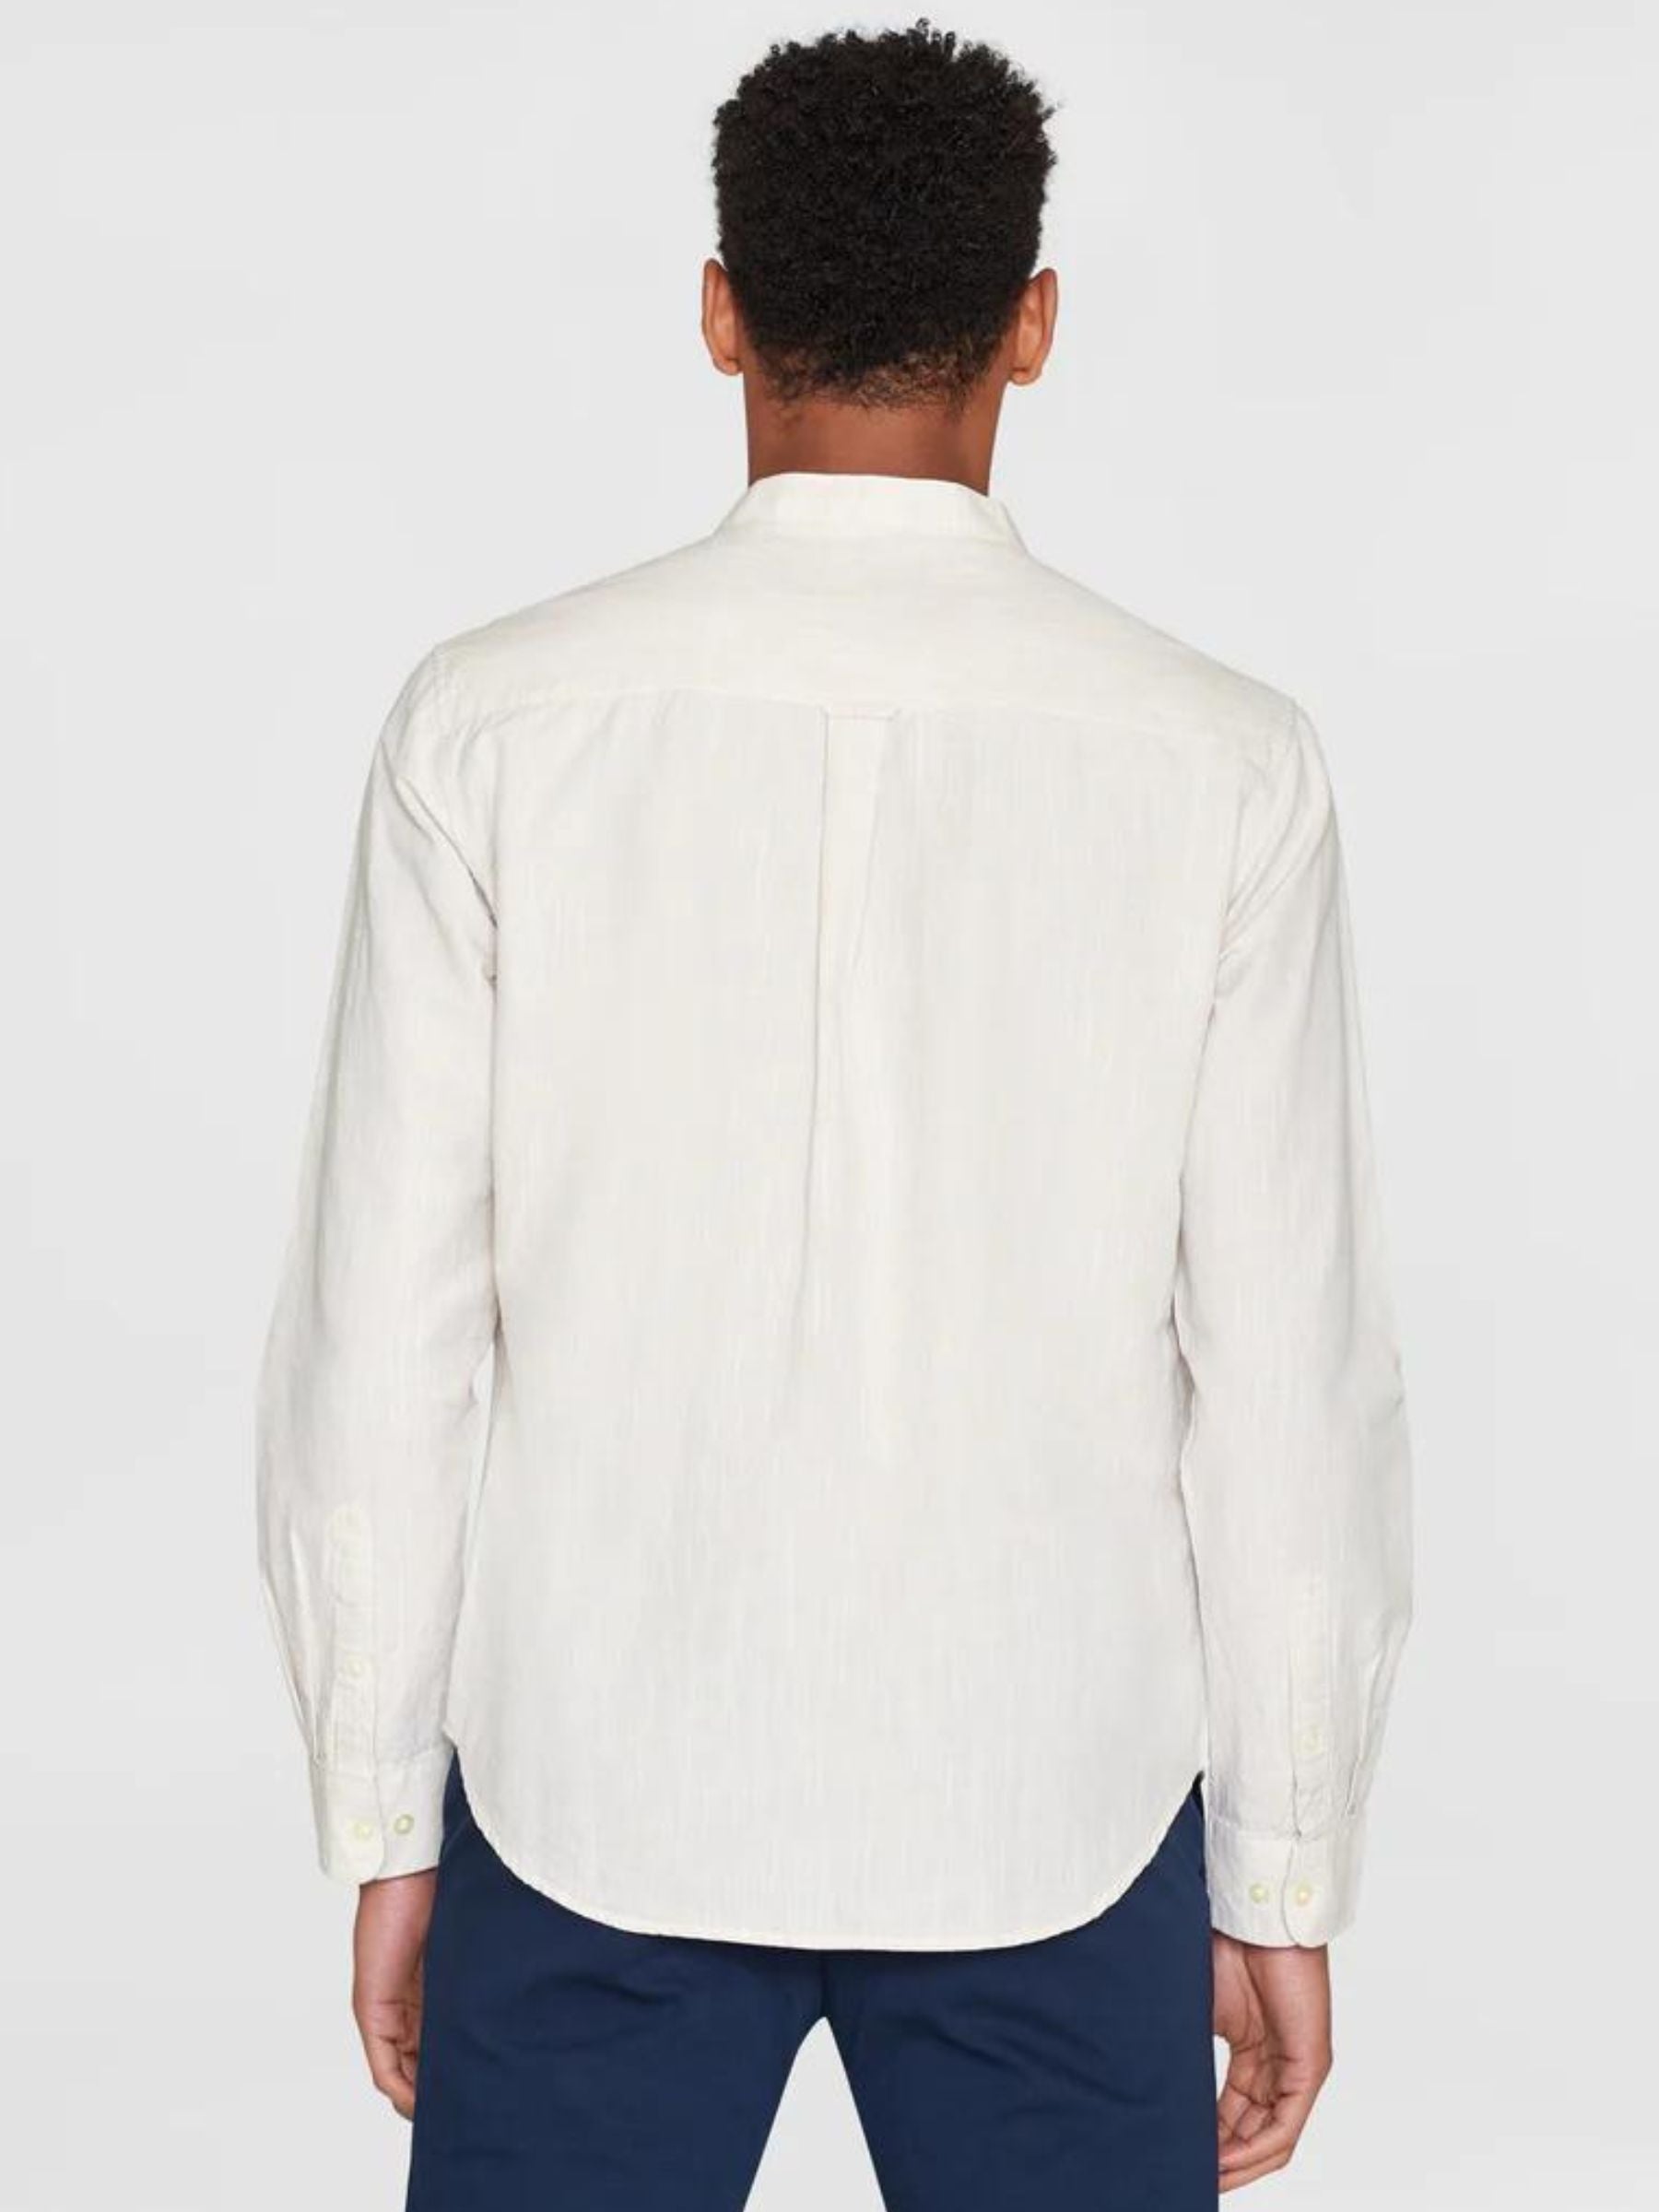 Camicia Regular Bianco Cotone organico | Knowledge Cotton Apparel